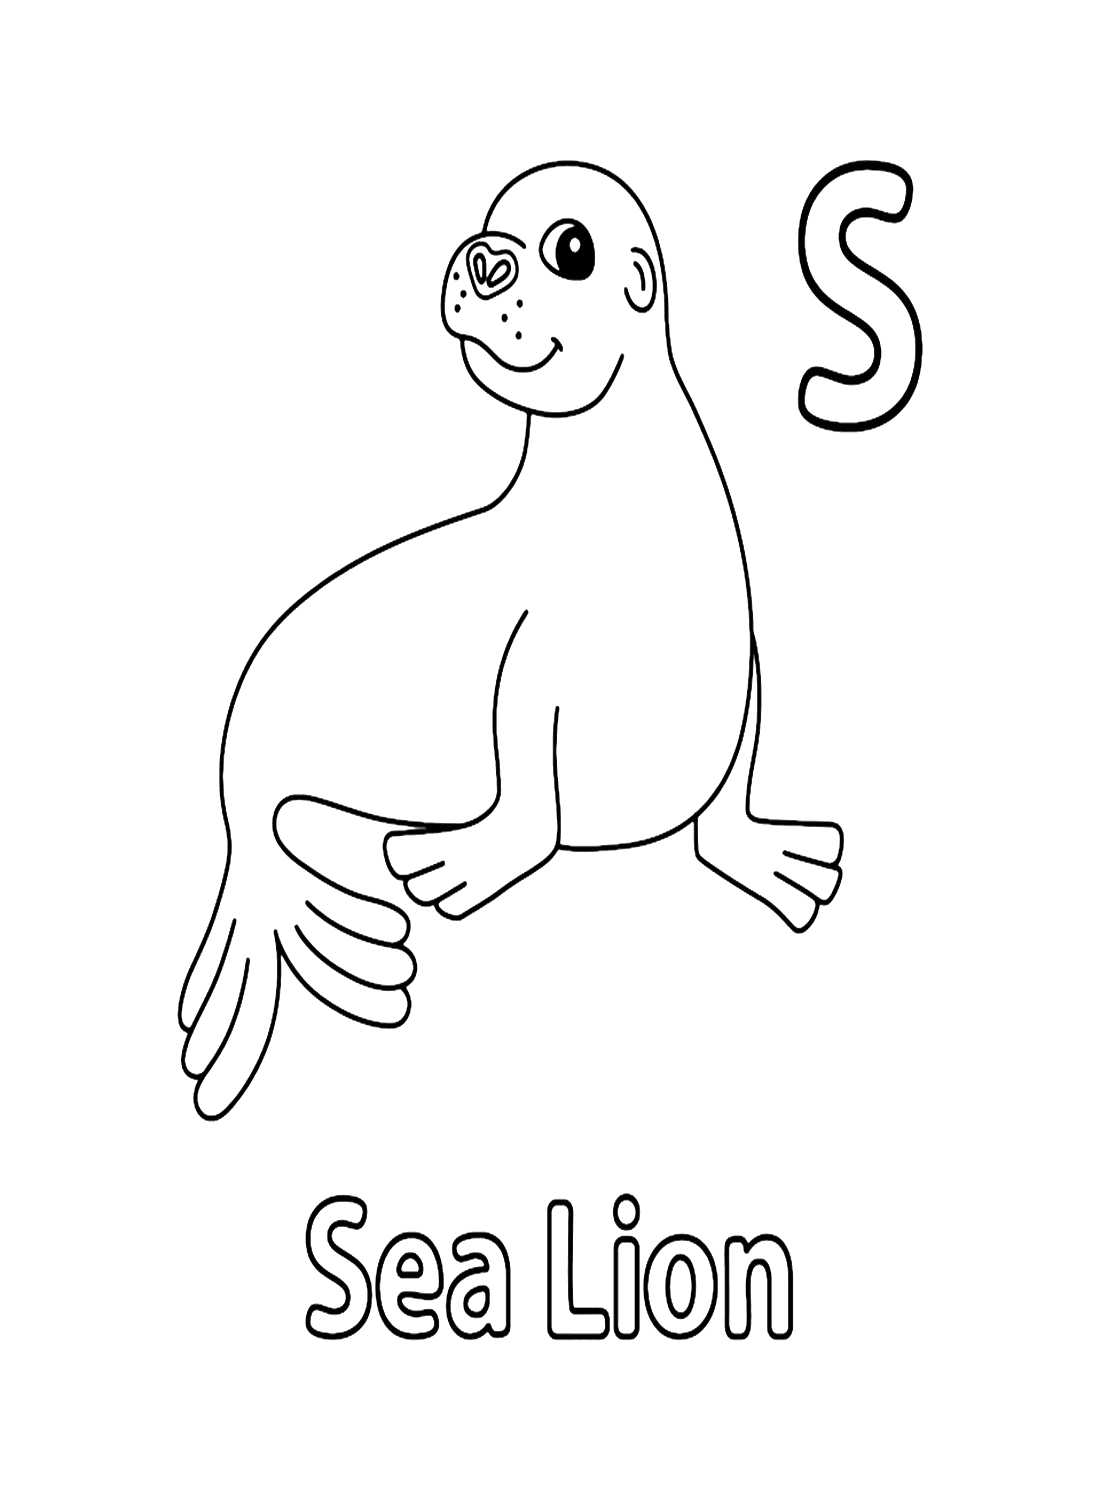 Буква S для морского льва из Морского льва